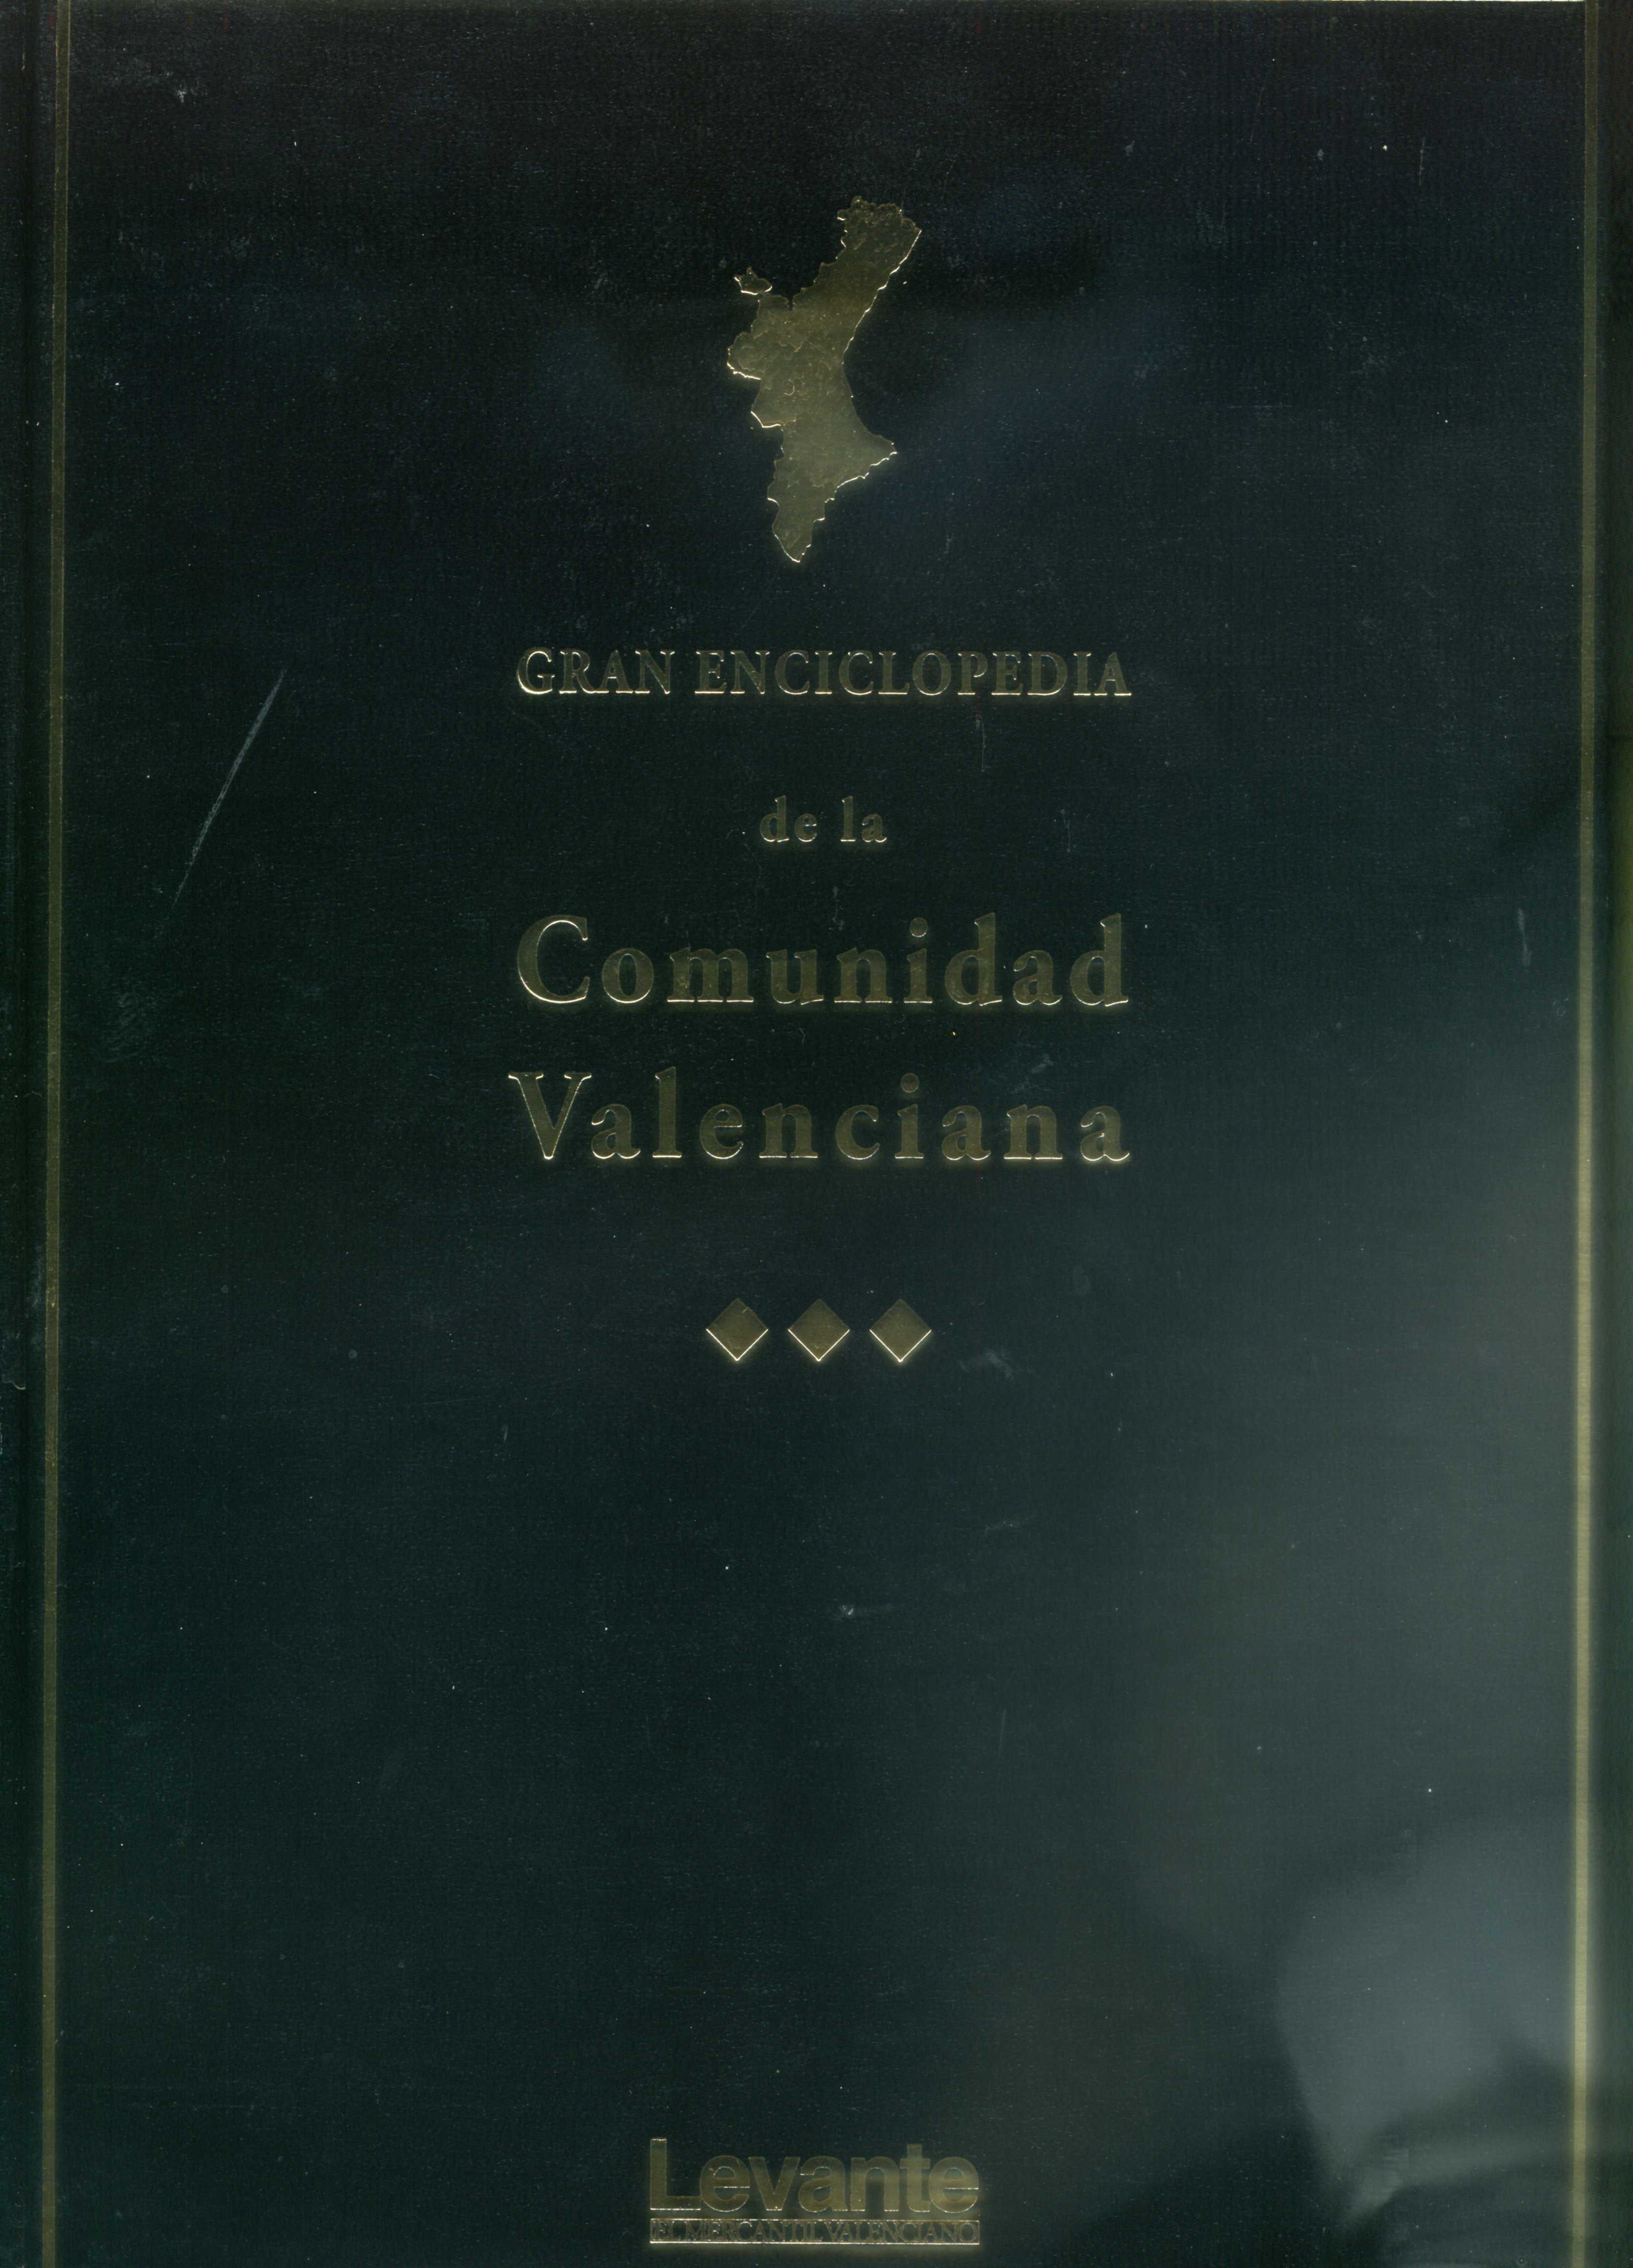 Gran Enciclopedia de la Comunidad Valenciana-14 (Rib-San)